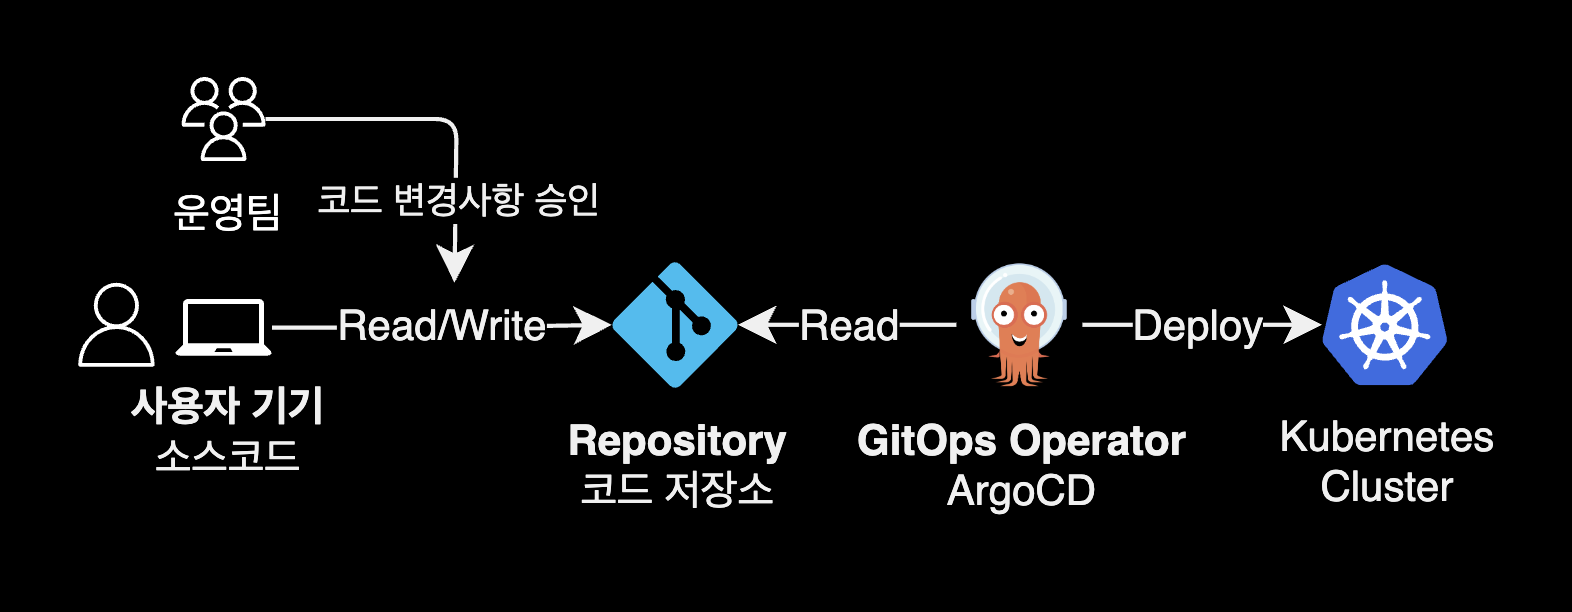 GitOps Workflow